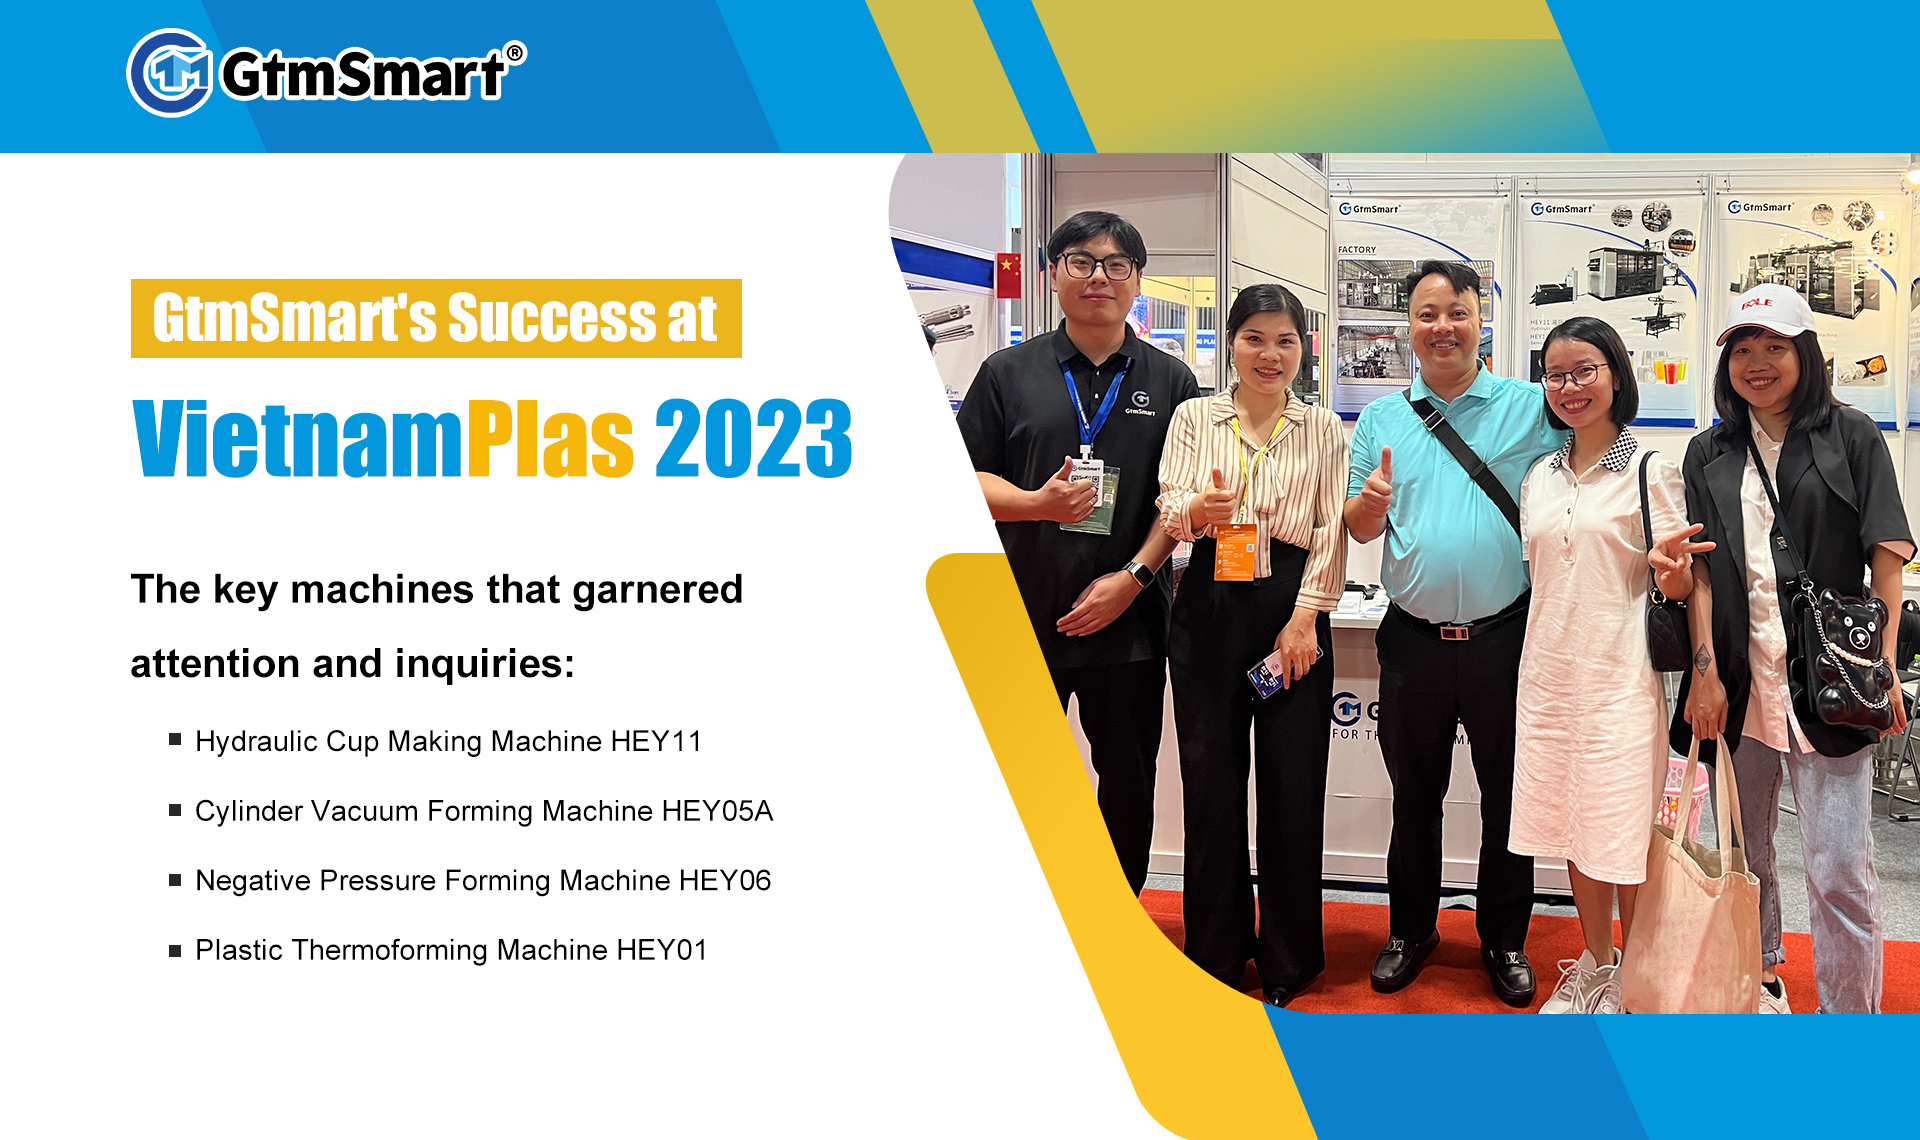 ความสำเร็จของ GtmSmart ที่ VietnamPlas 2023